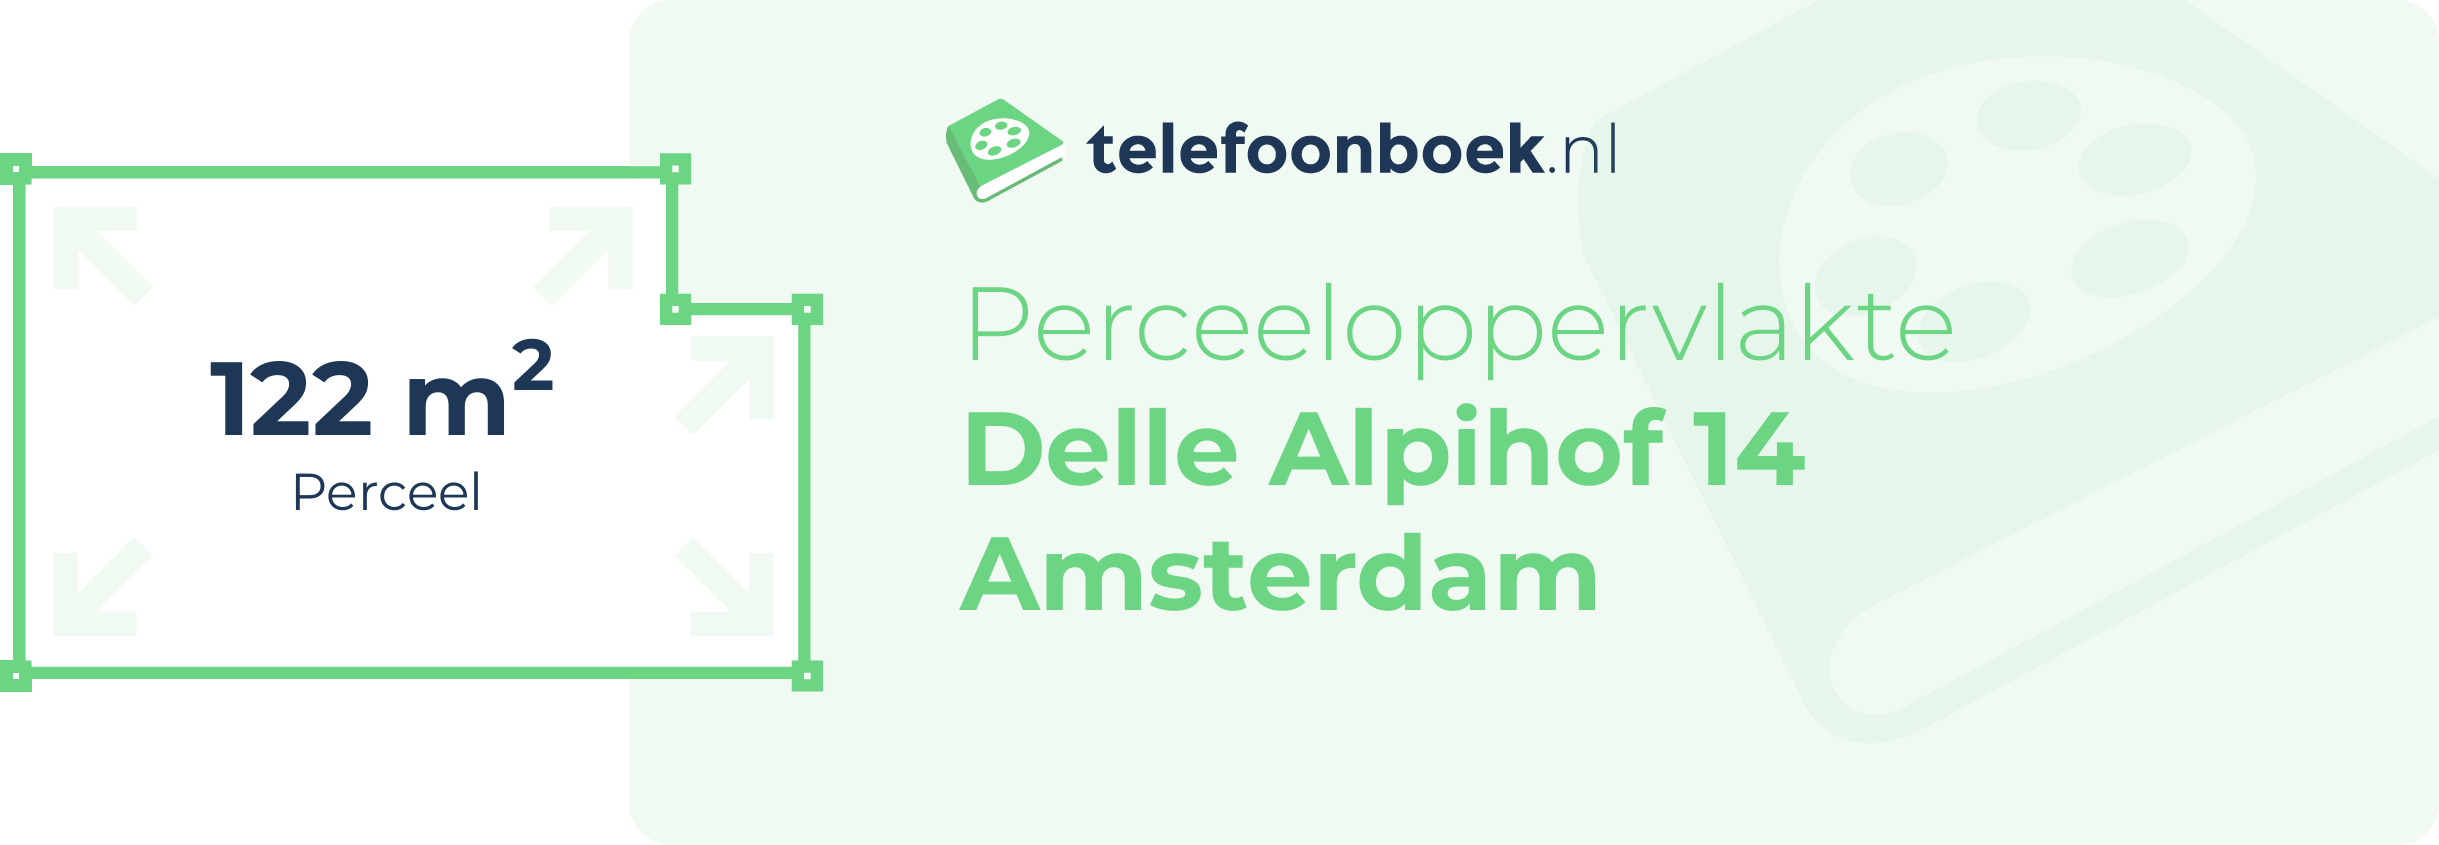 Perceeloppervlakte Delle Alpihof 14 Amsterdam